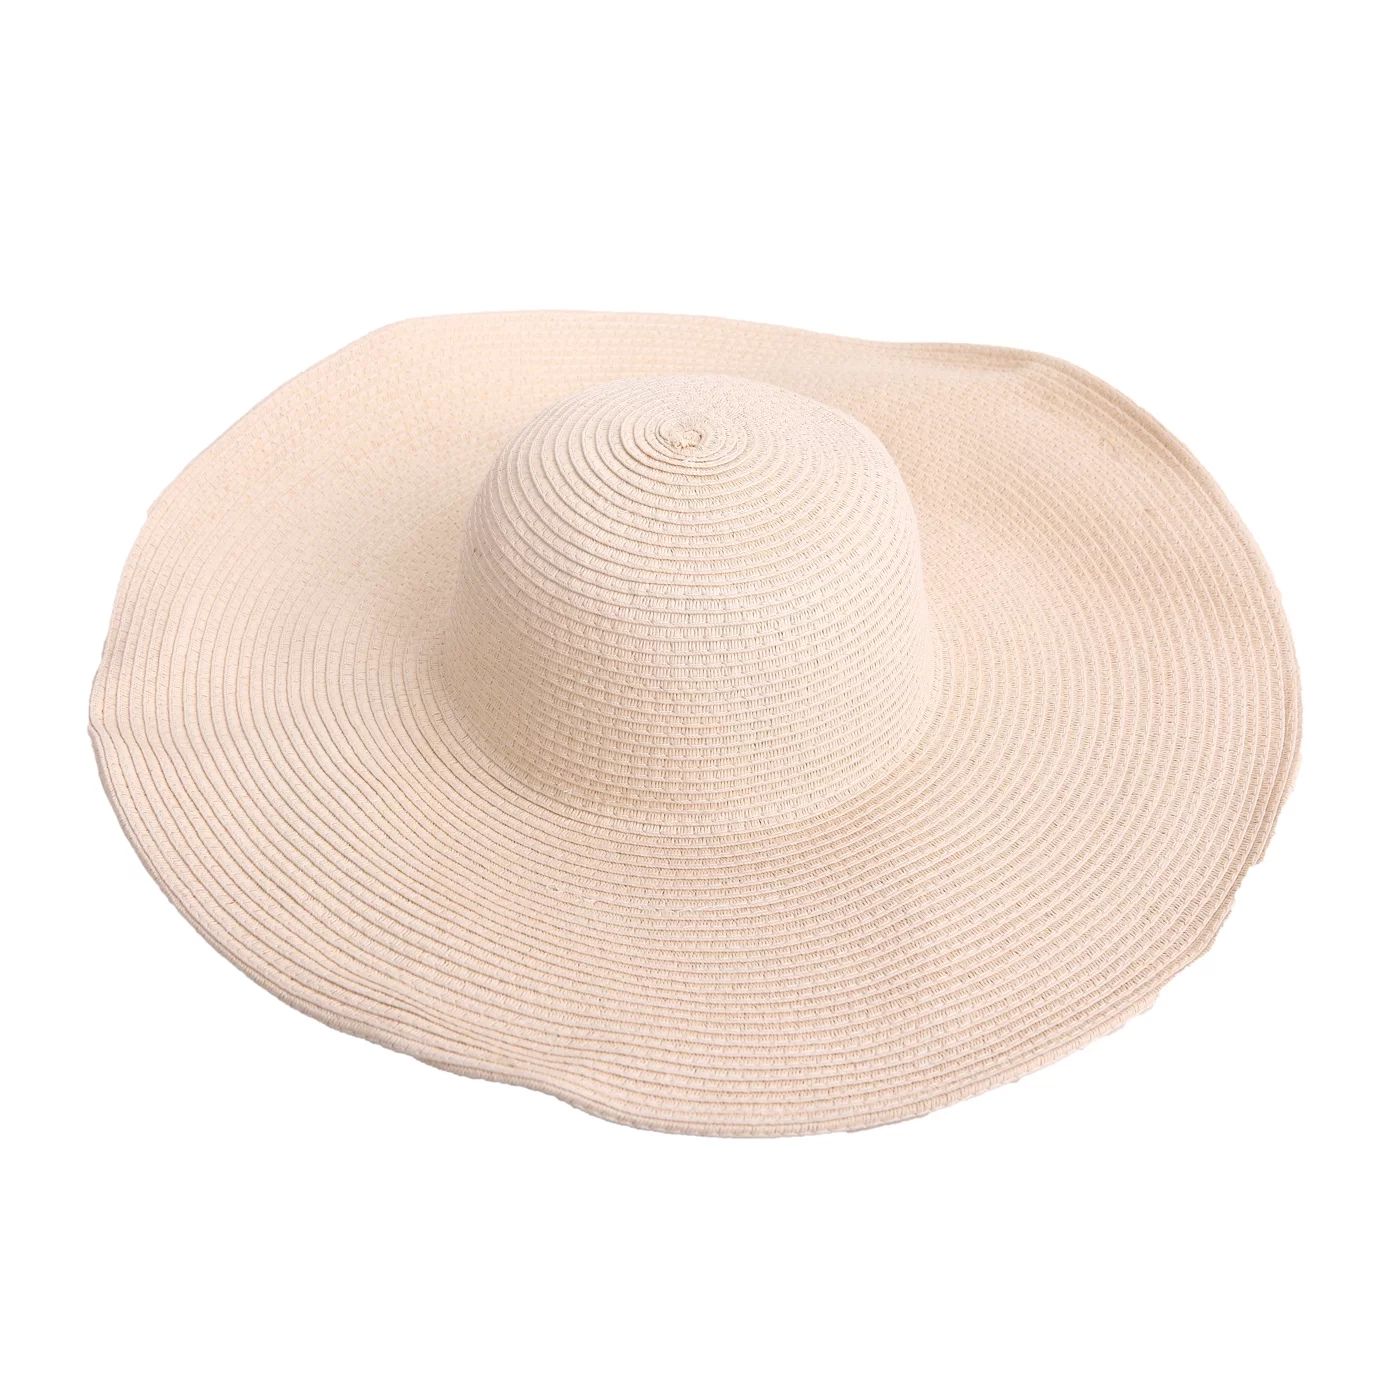 HDE Women's Floppy Packable Wide Brim Sun Shade Derby Beach Straw Hat (Beige) | Walmart (US)